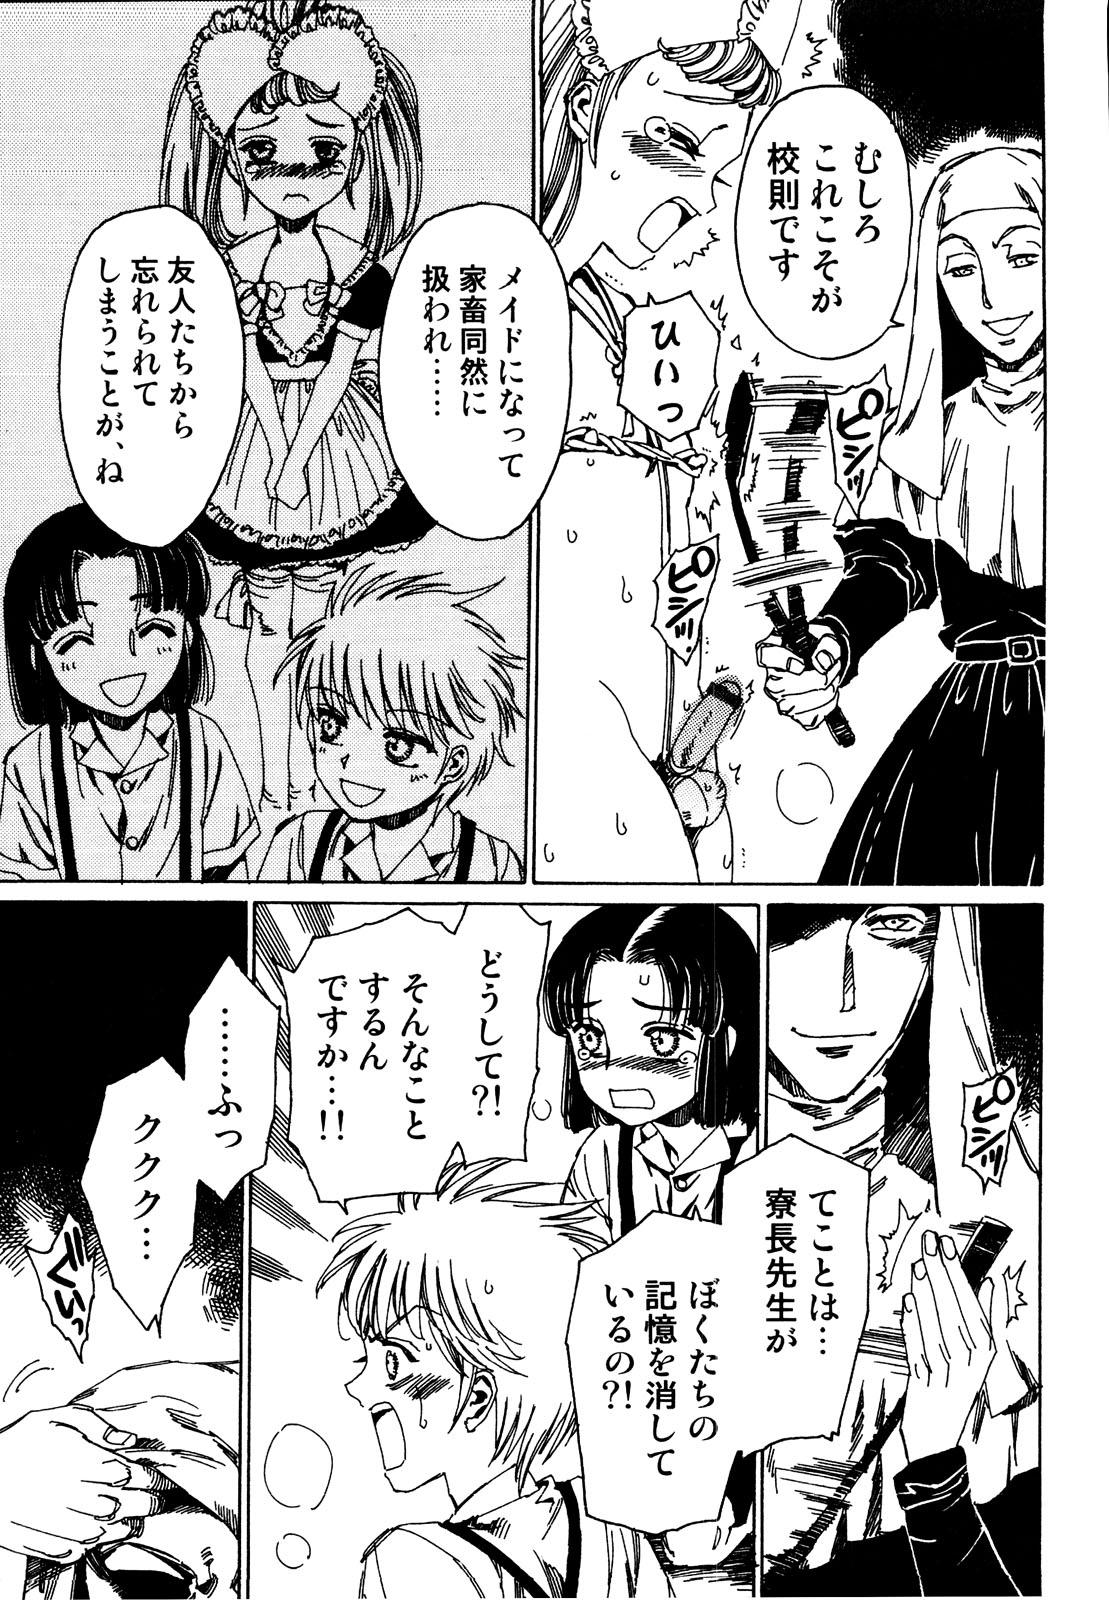 Ex Gf Ero Shota 19 - Otokonoko X Otokonoko Punished - Page 7